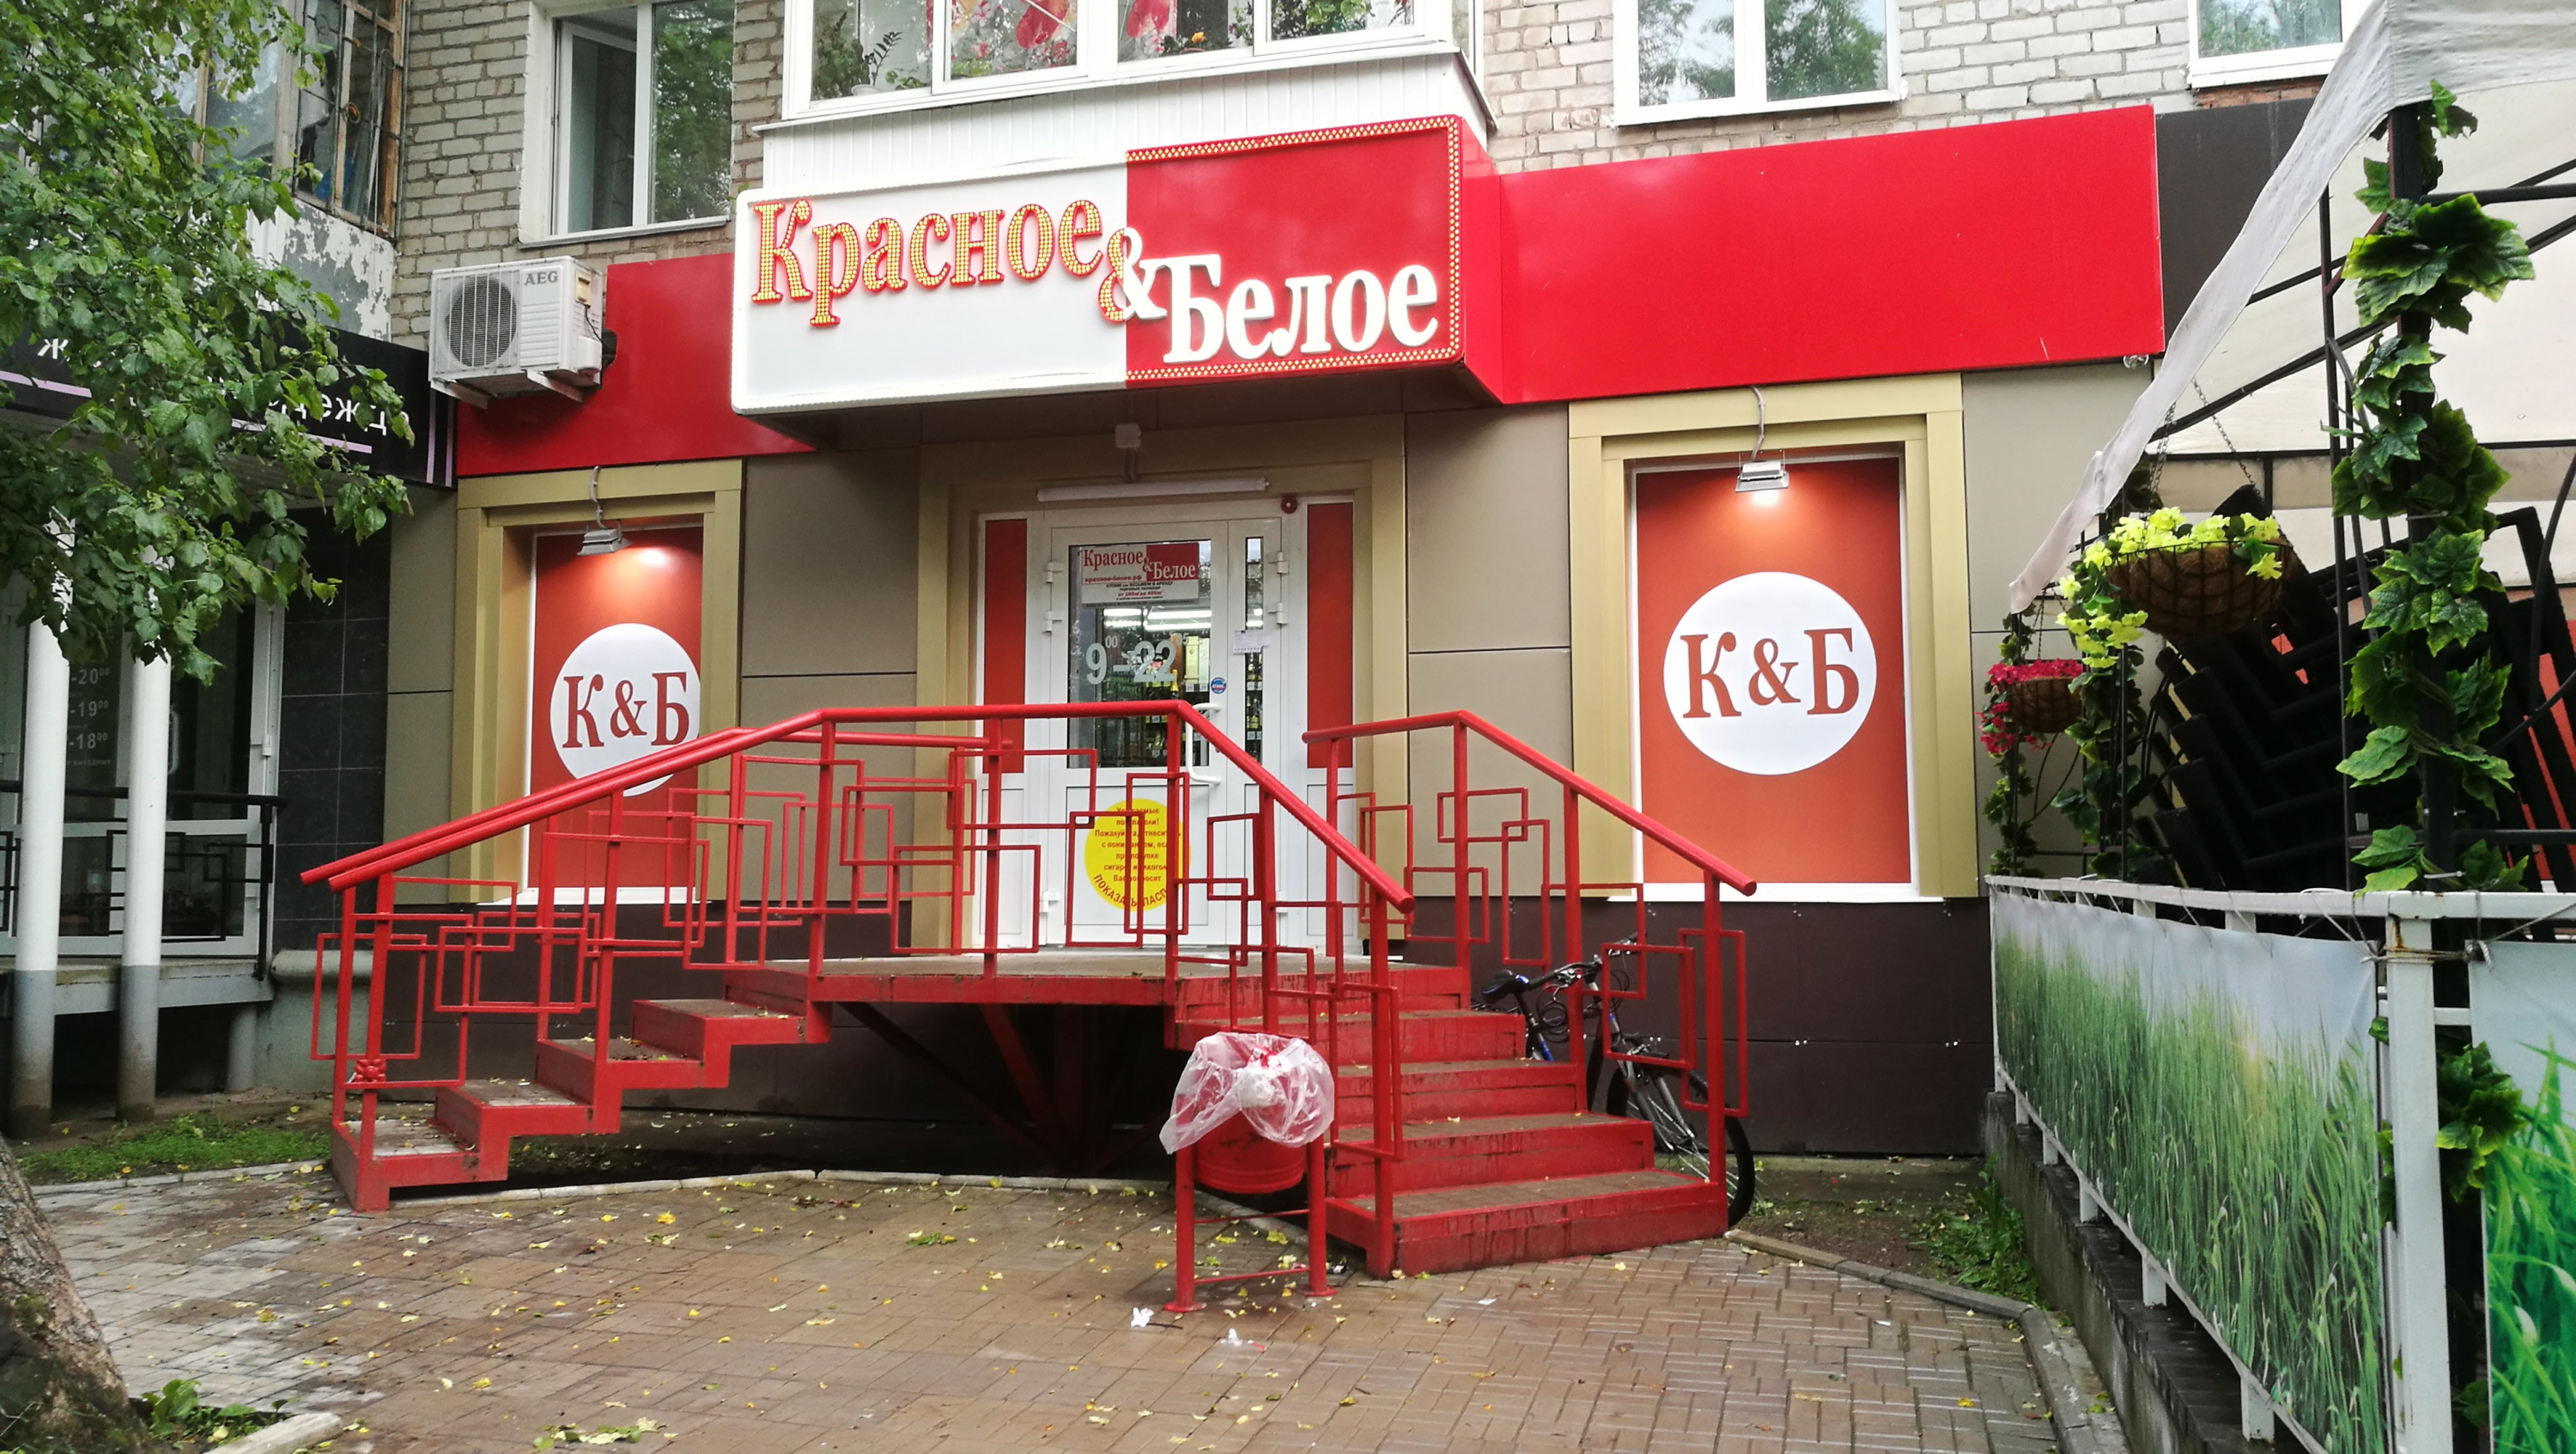 Количество Магазинов Красное И Белое В Москве